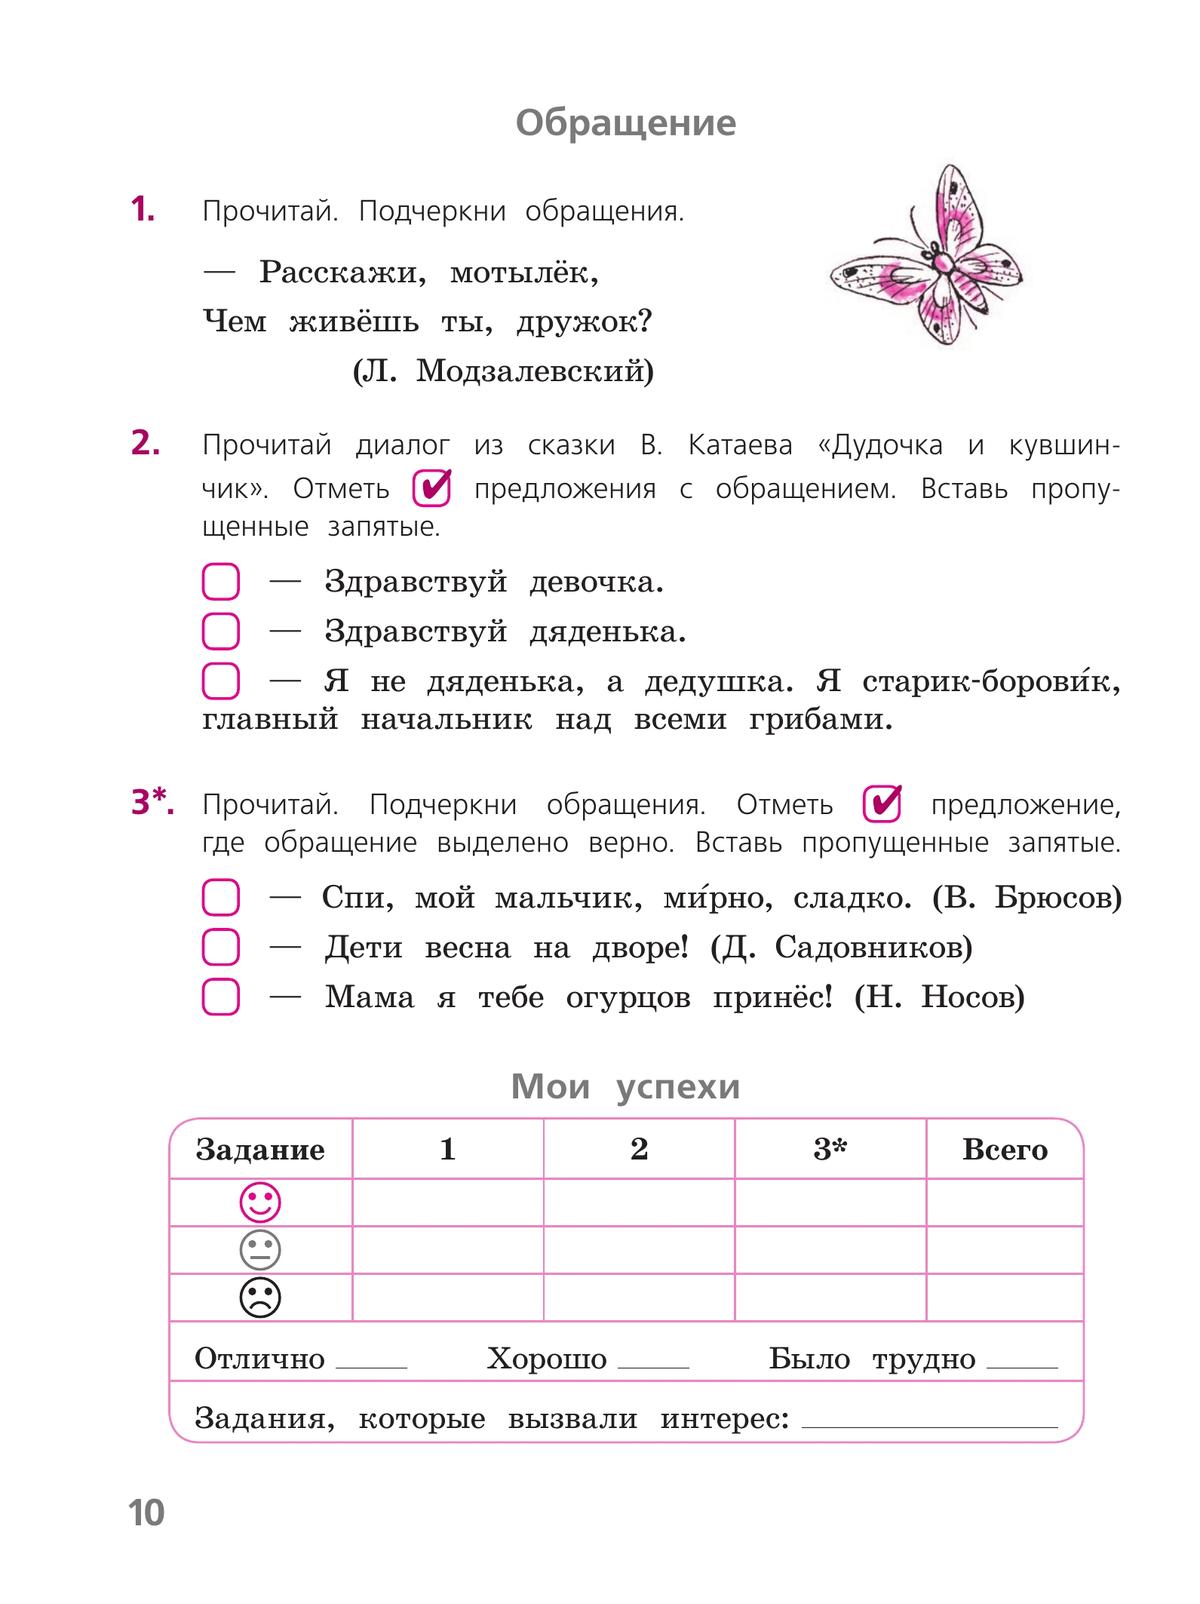 Русский язык. Тетрадь учебных достижений. 4 класс 5